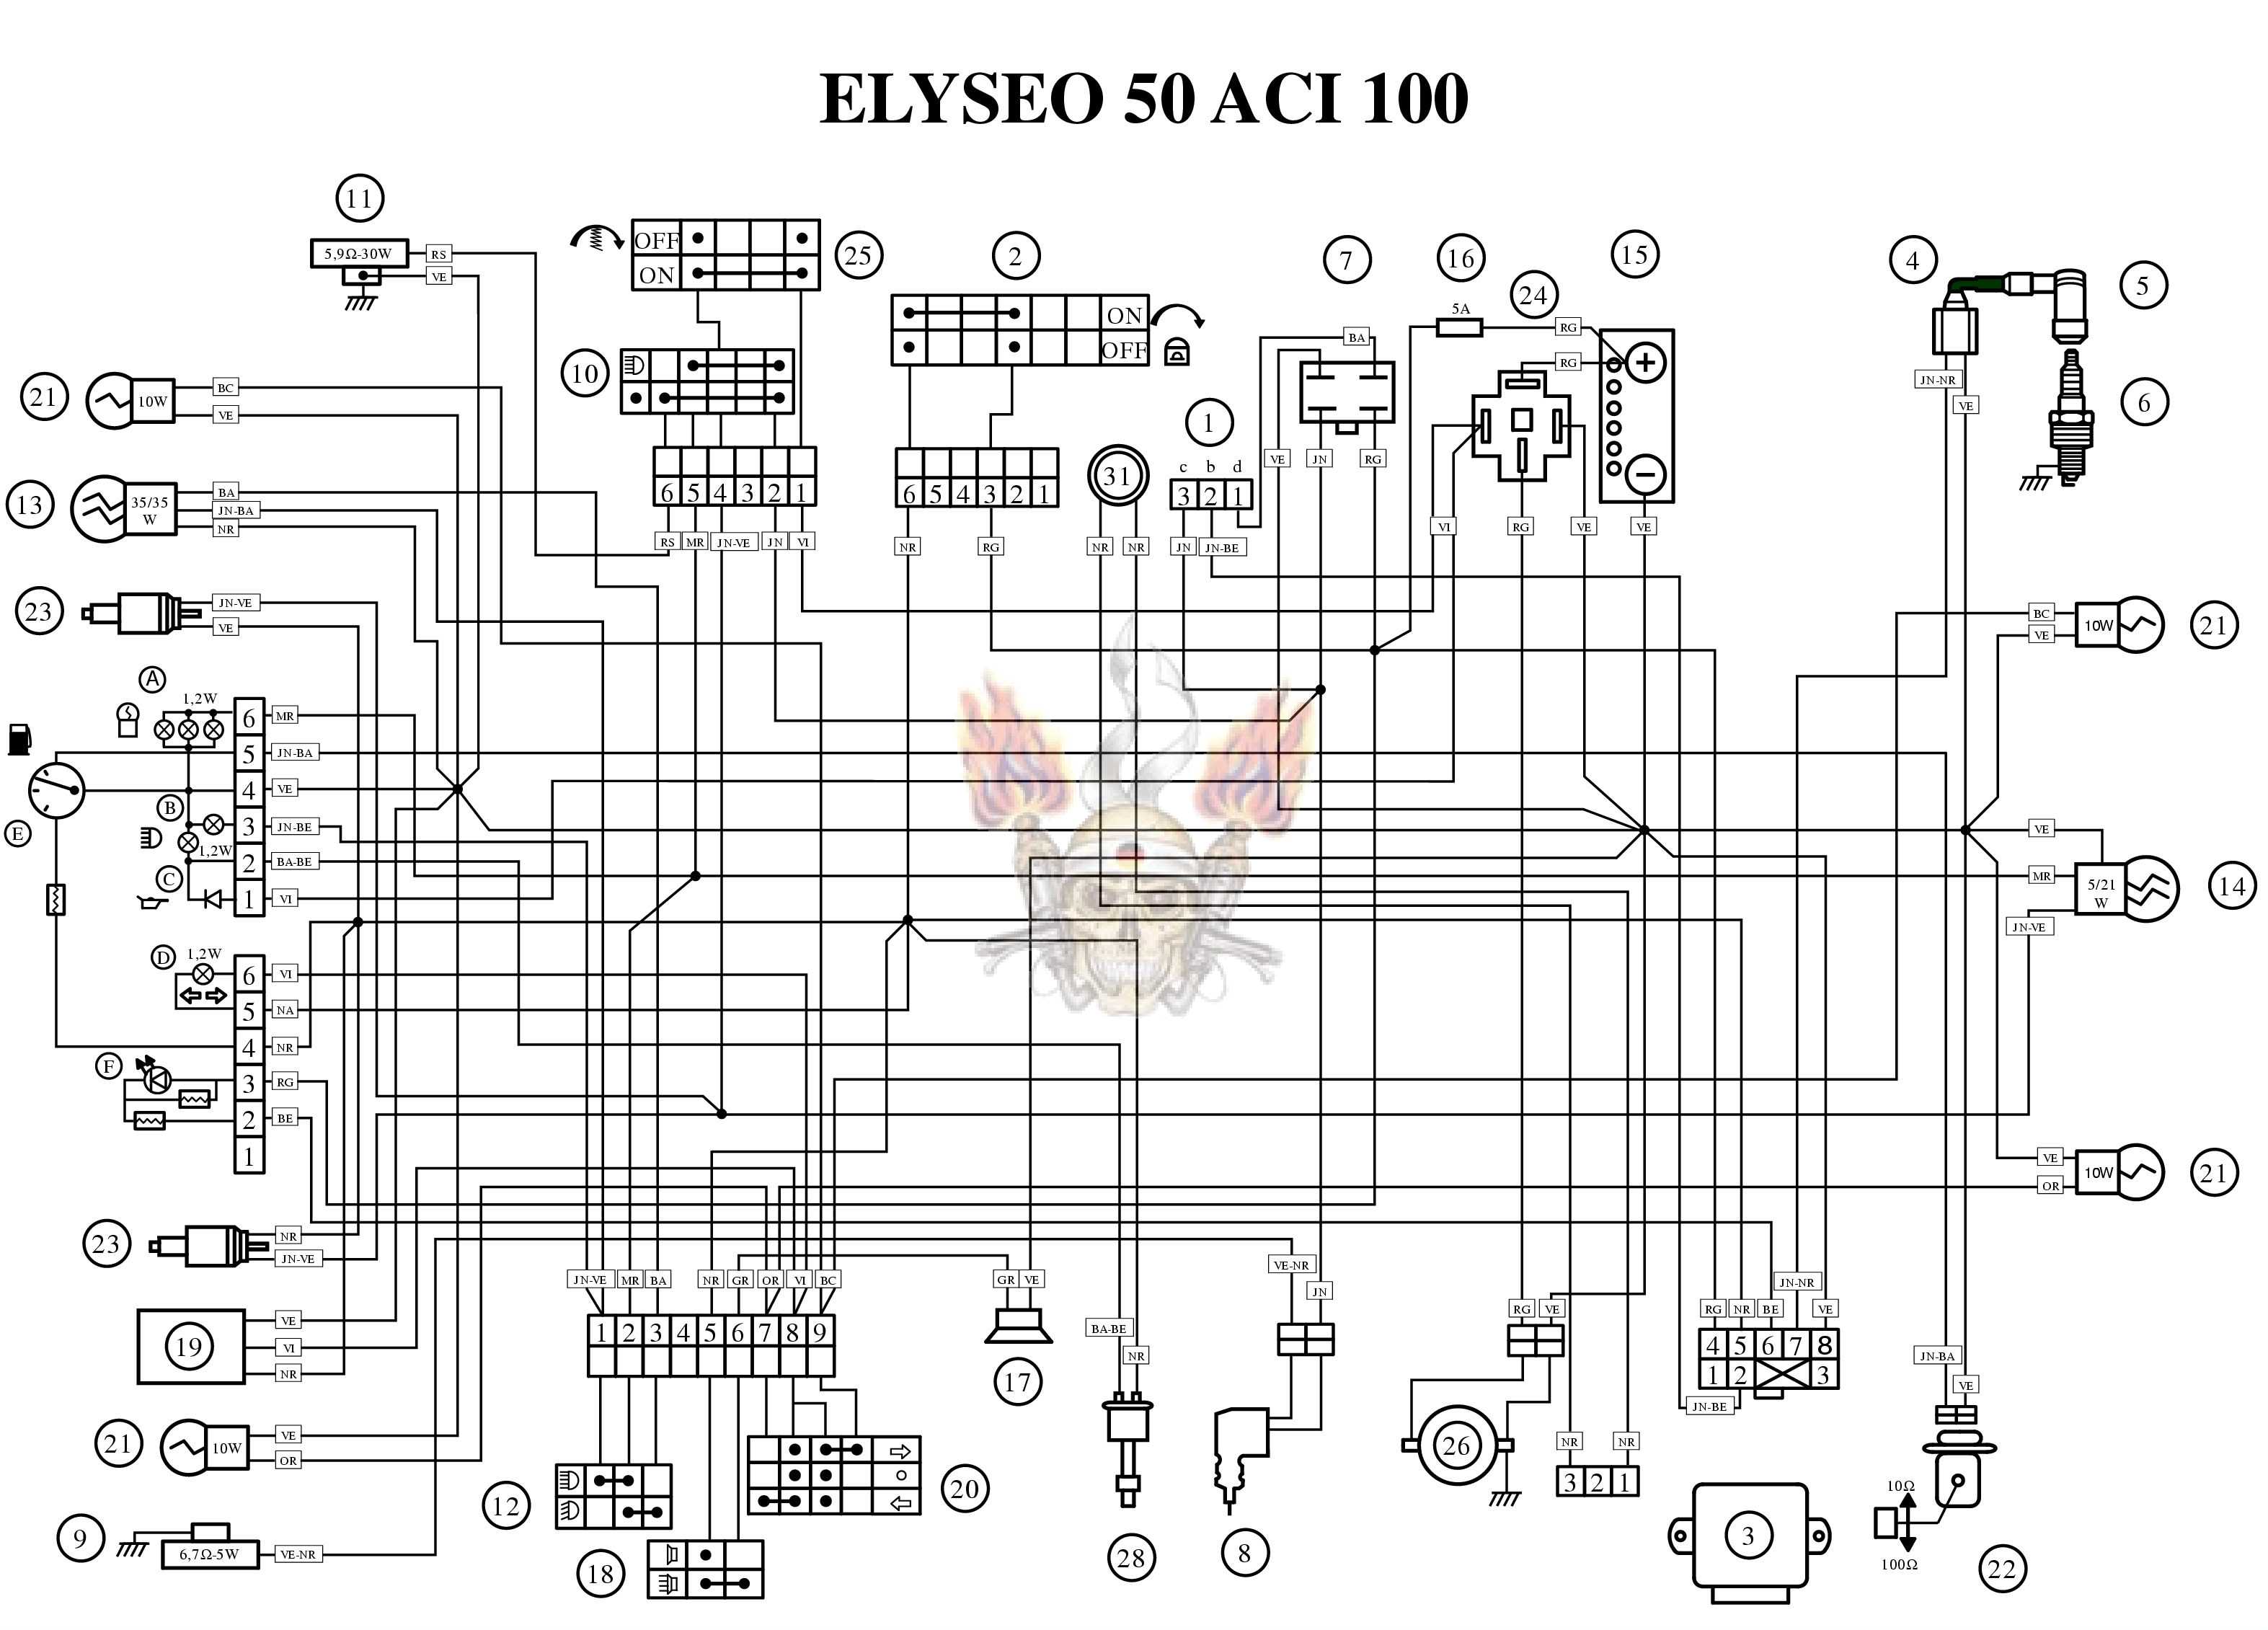 Peugeot - Motorcycles Manual PDF, Wiring Diagram & Fault Codes peugeot boxer wiring diagram download 